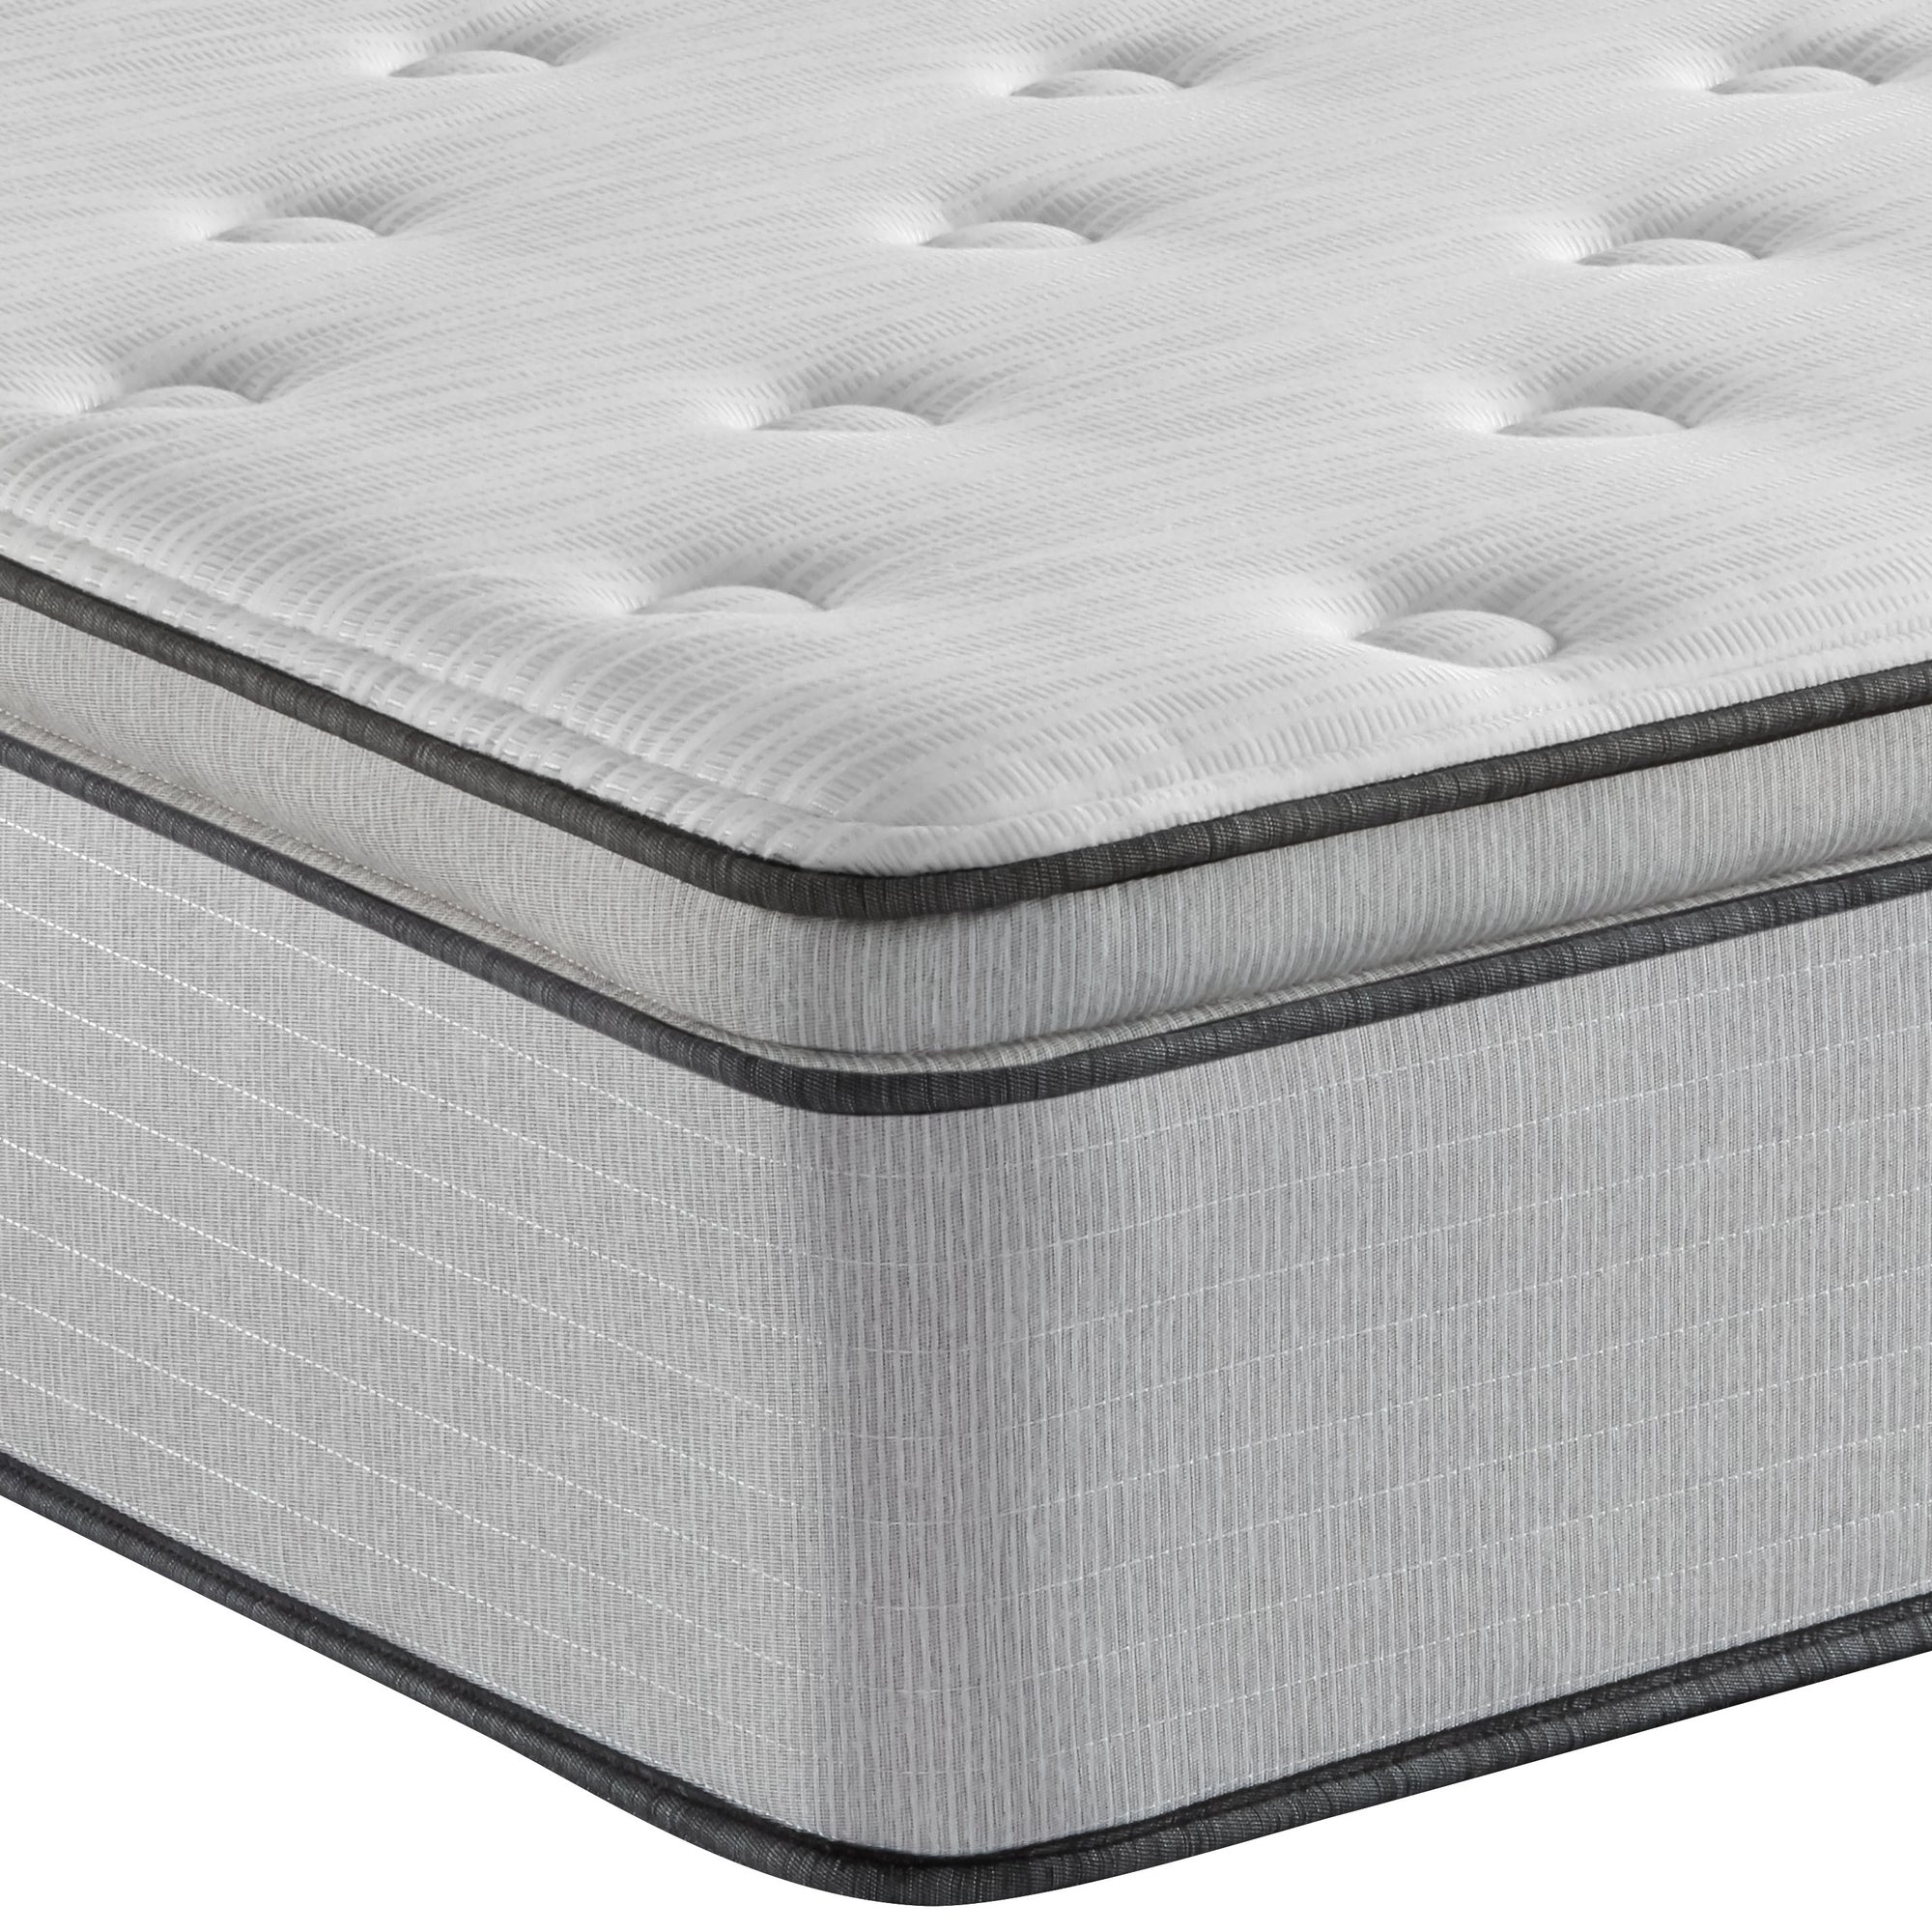 Corner view of the Beautyrest BR800 Medium Pillow Top mattress